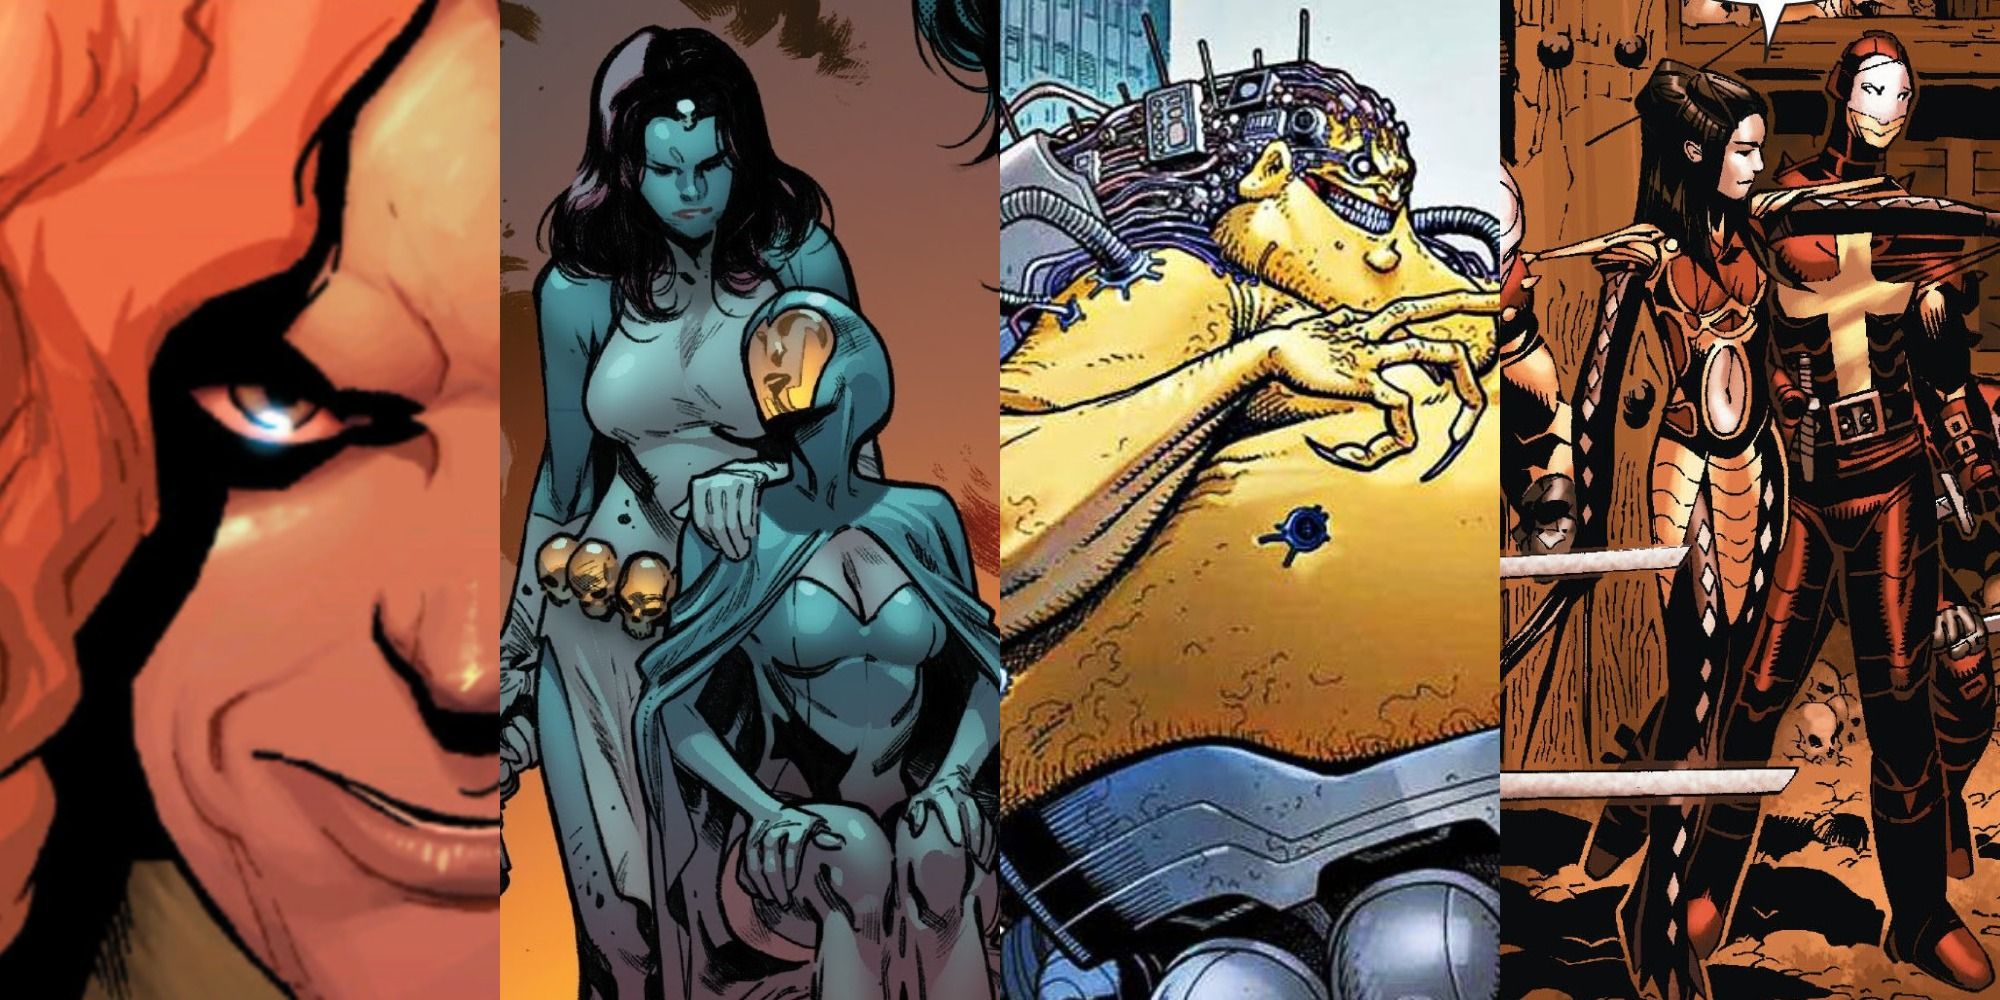 X-Men villains collage